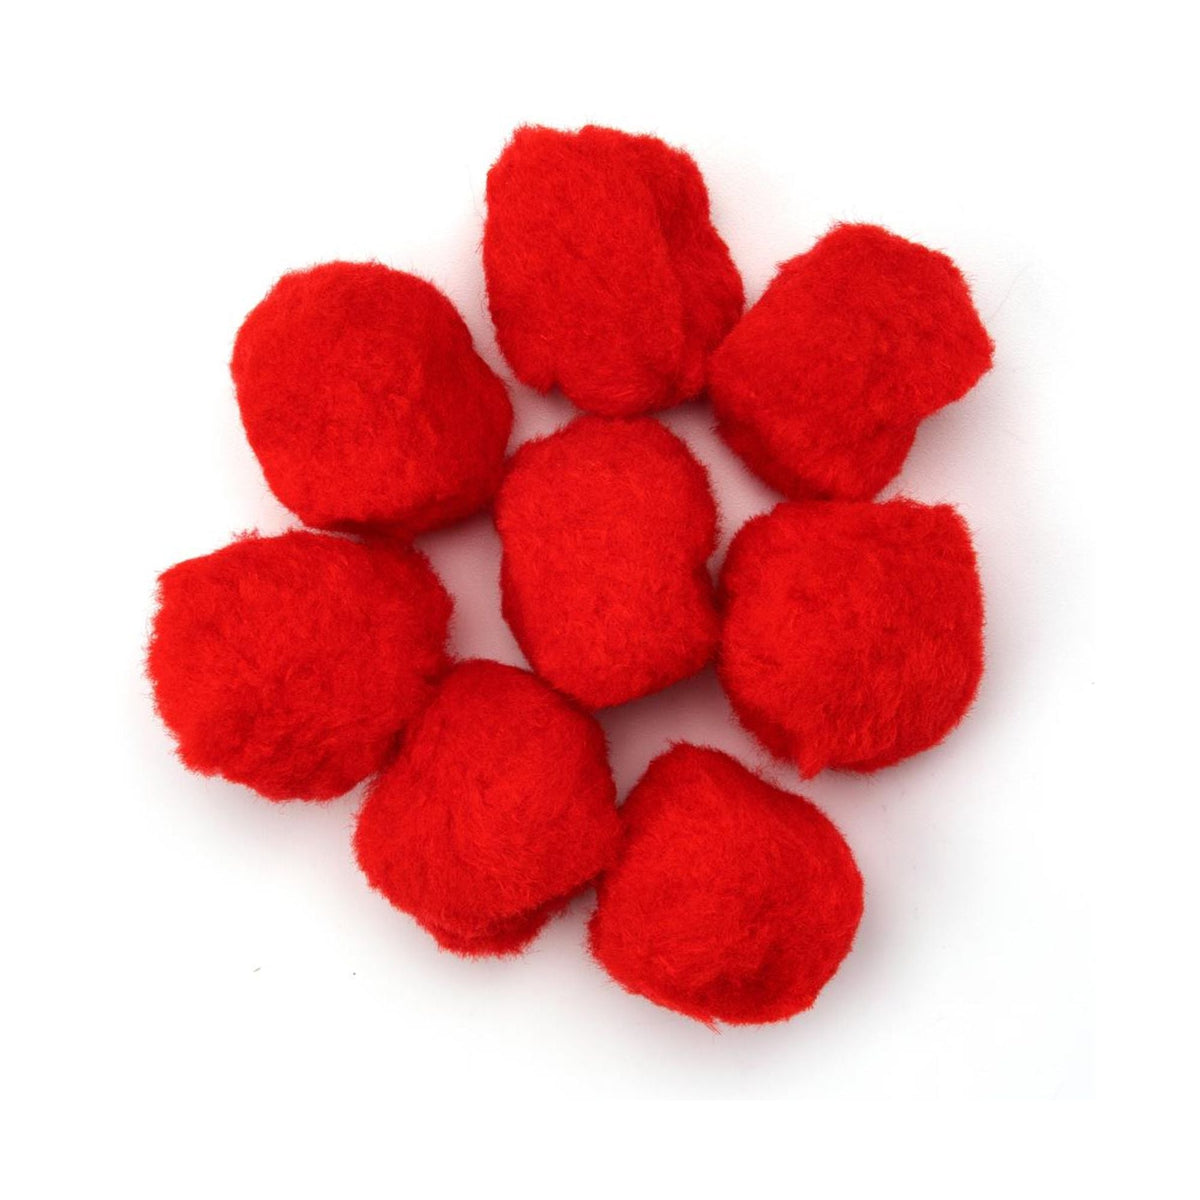 Big Red Pom Poms | 2 Inch Red Pom Poms - 8 Pieces/Pkg. (nmpom262010)